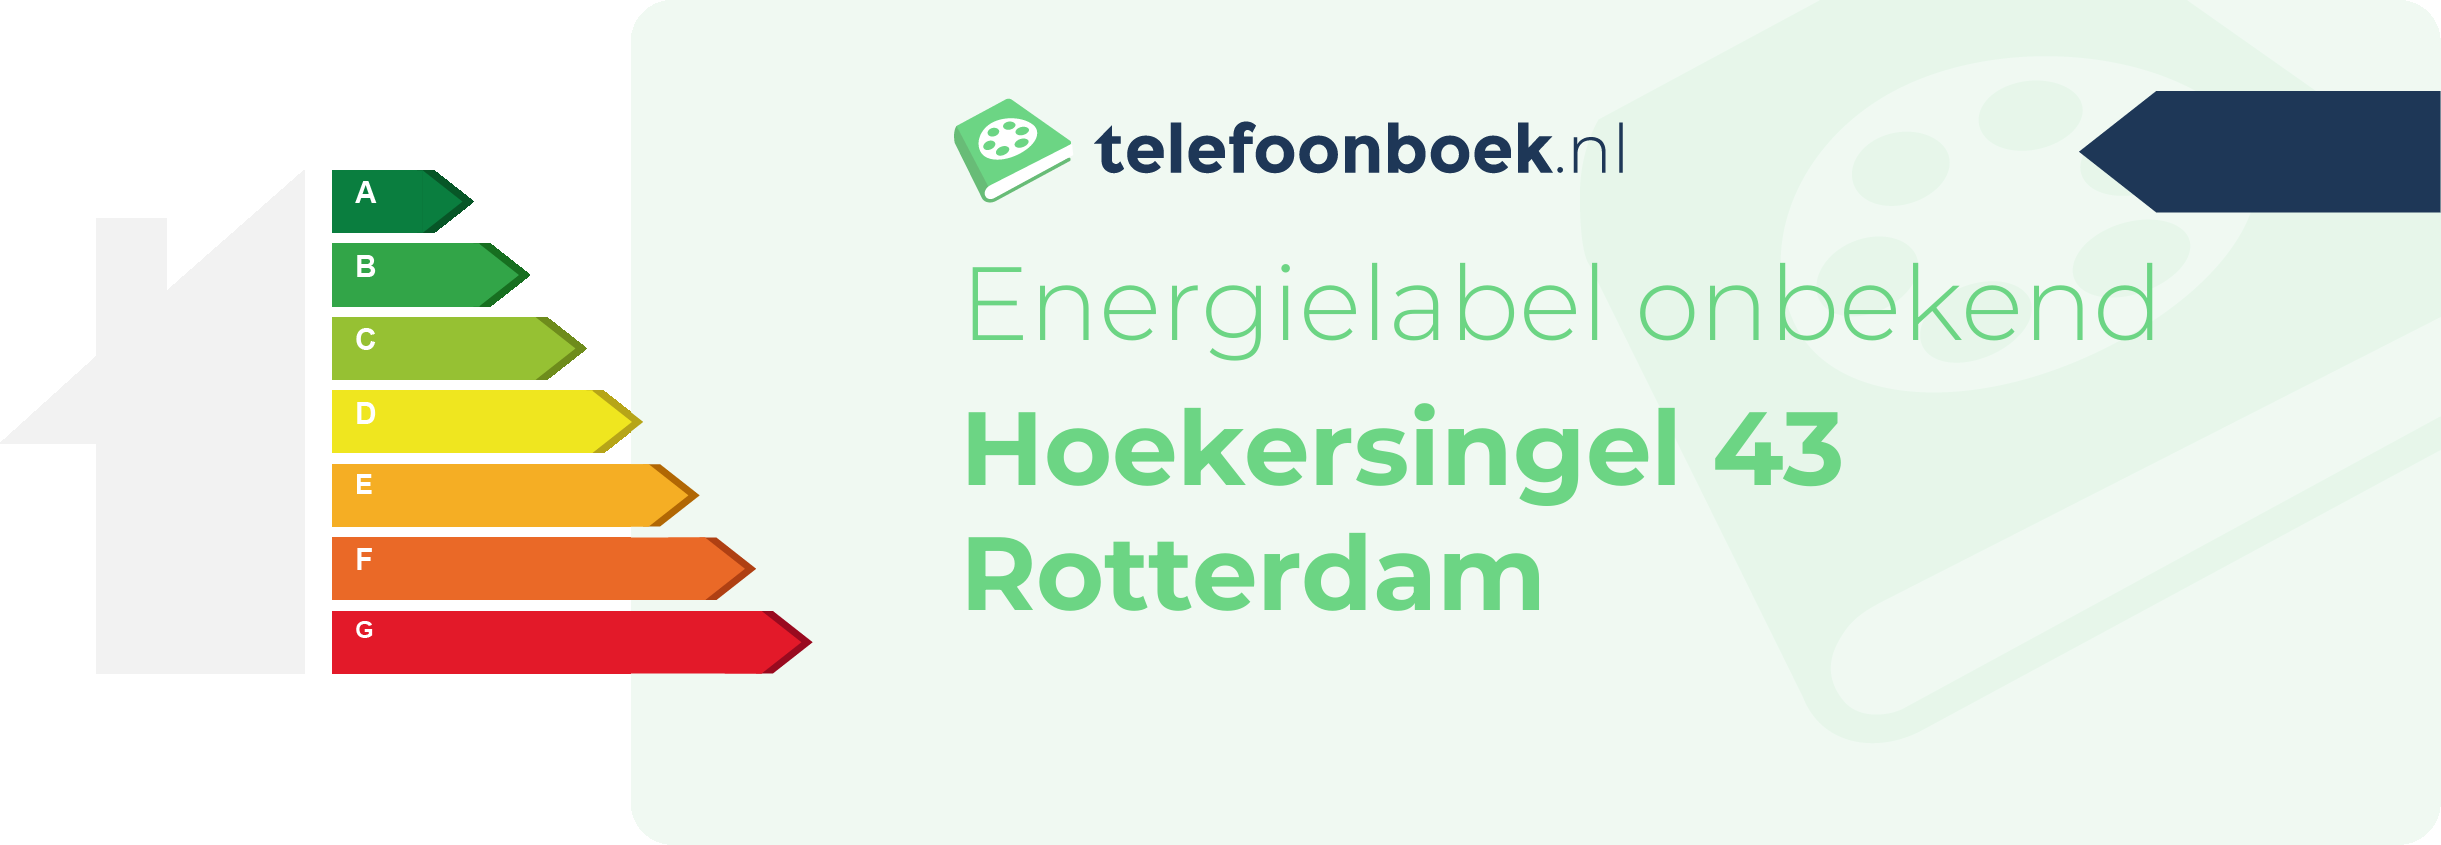 Energielabel Hoekersingel 43 Rotterdam